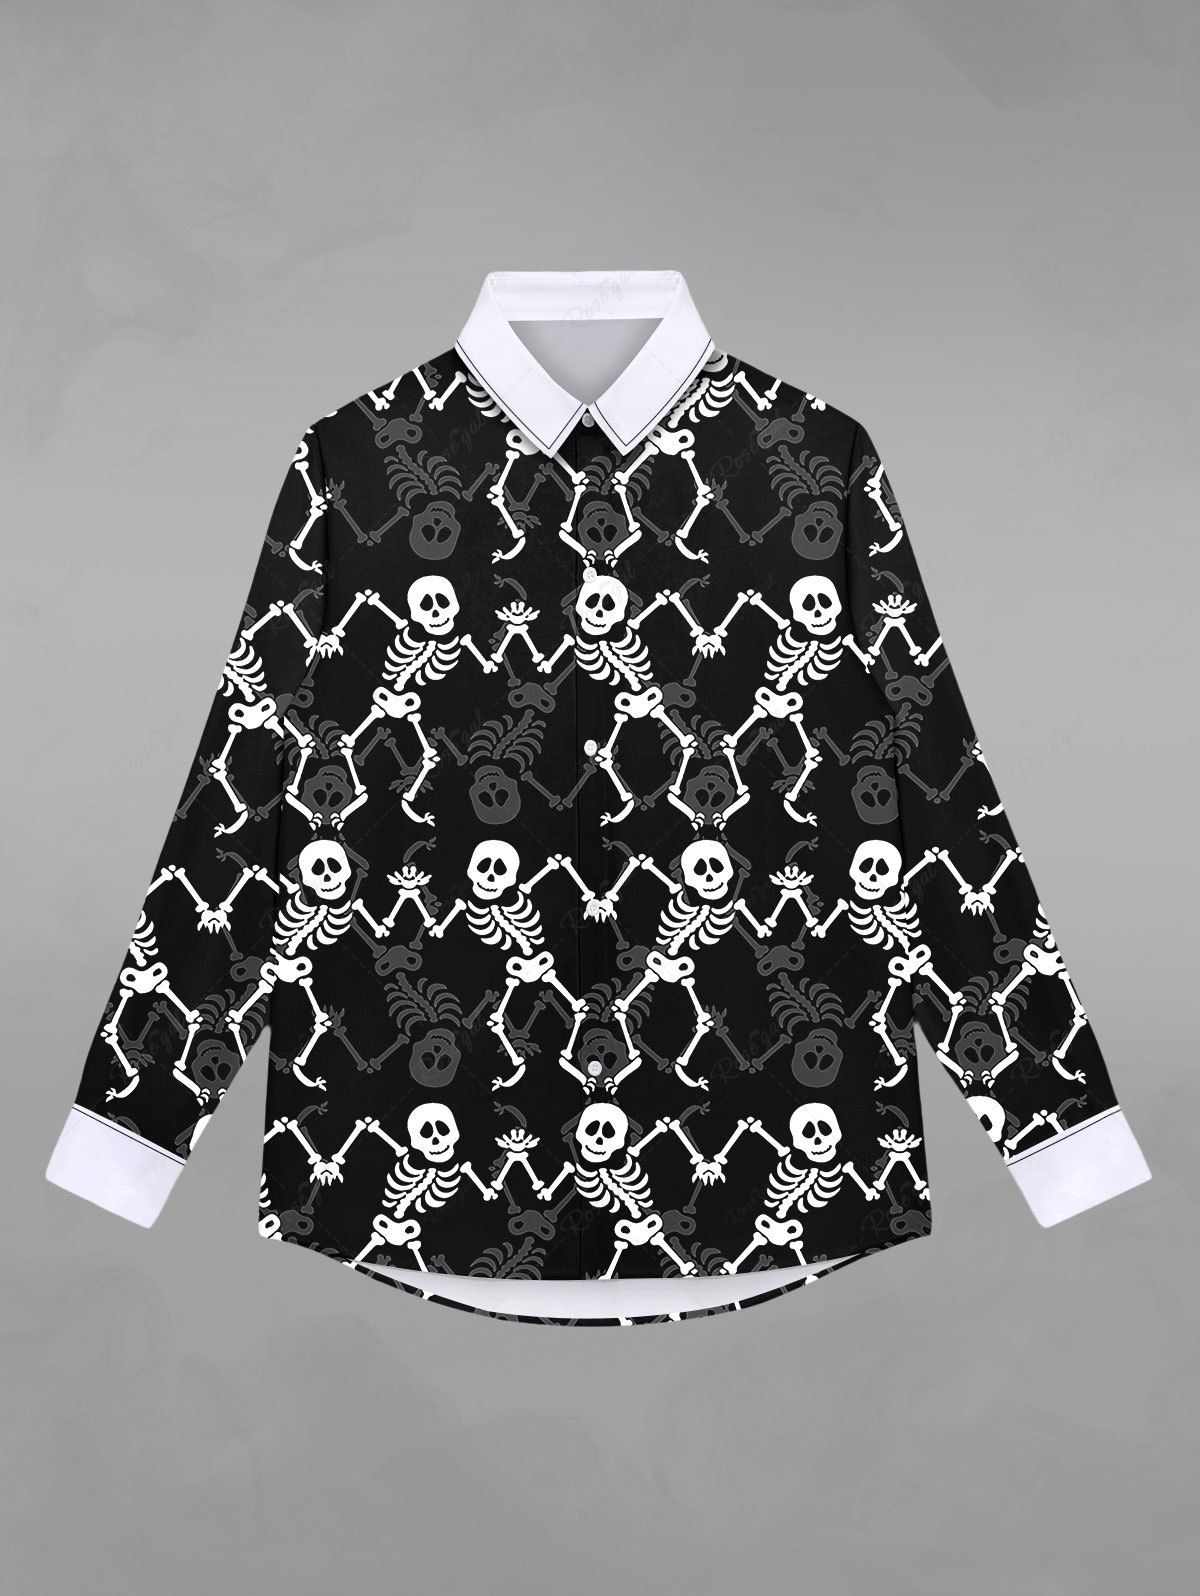 Fancy Gothic Skull Skeleton Print Halloween Shirt For Men  